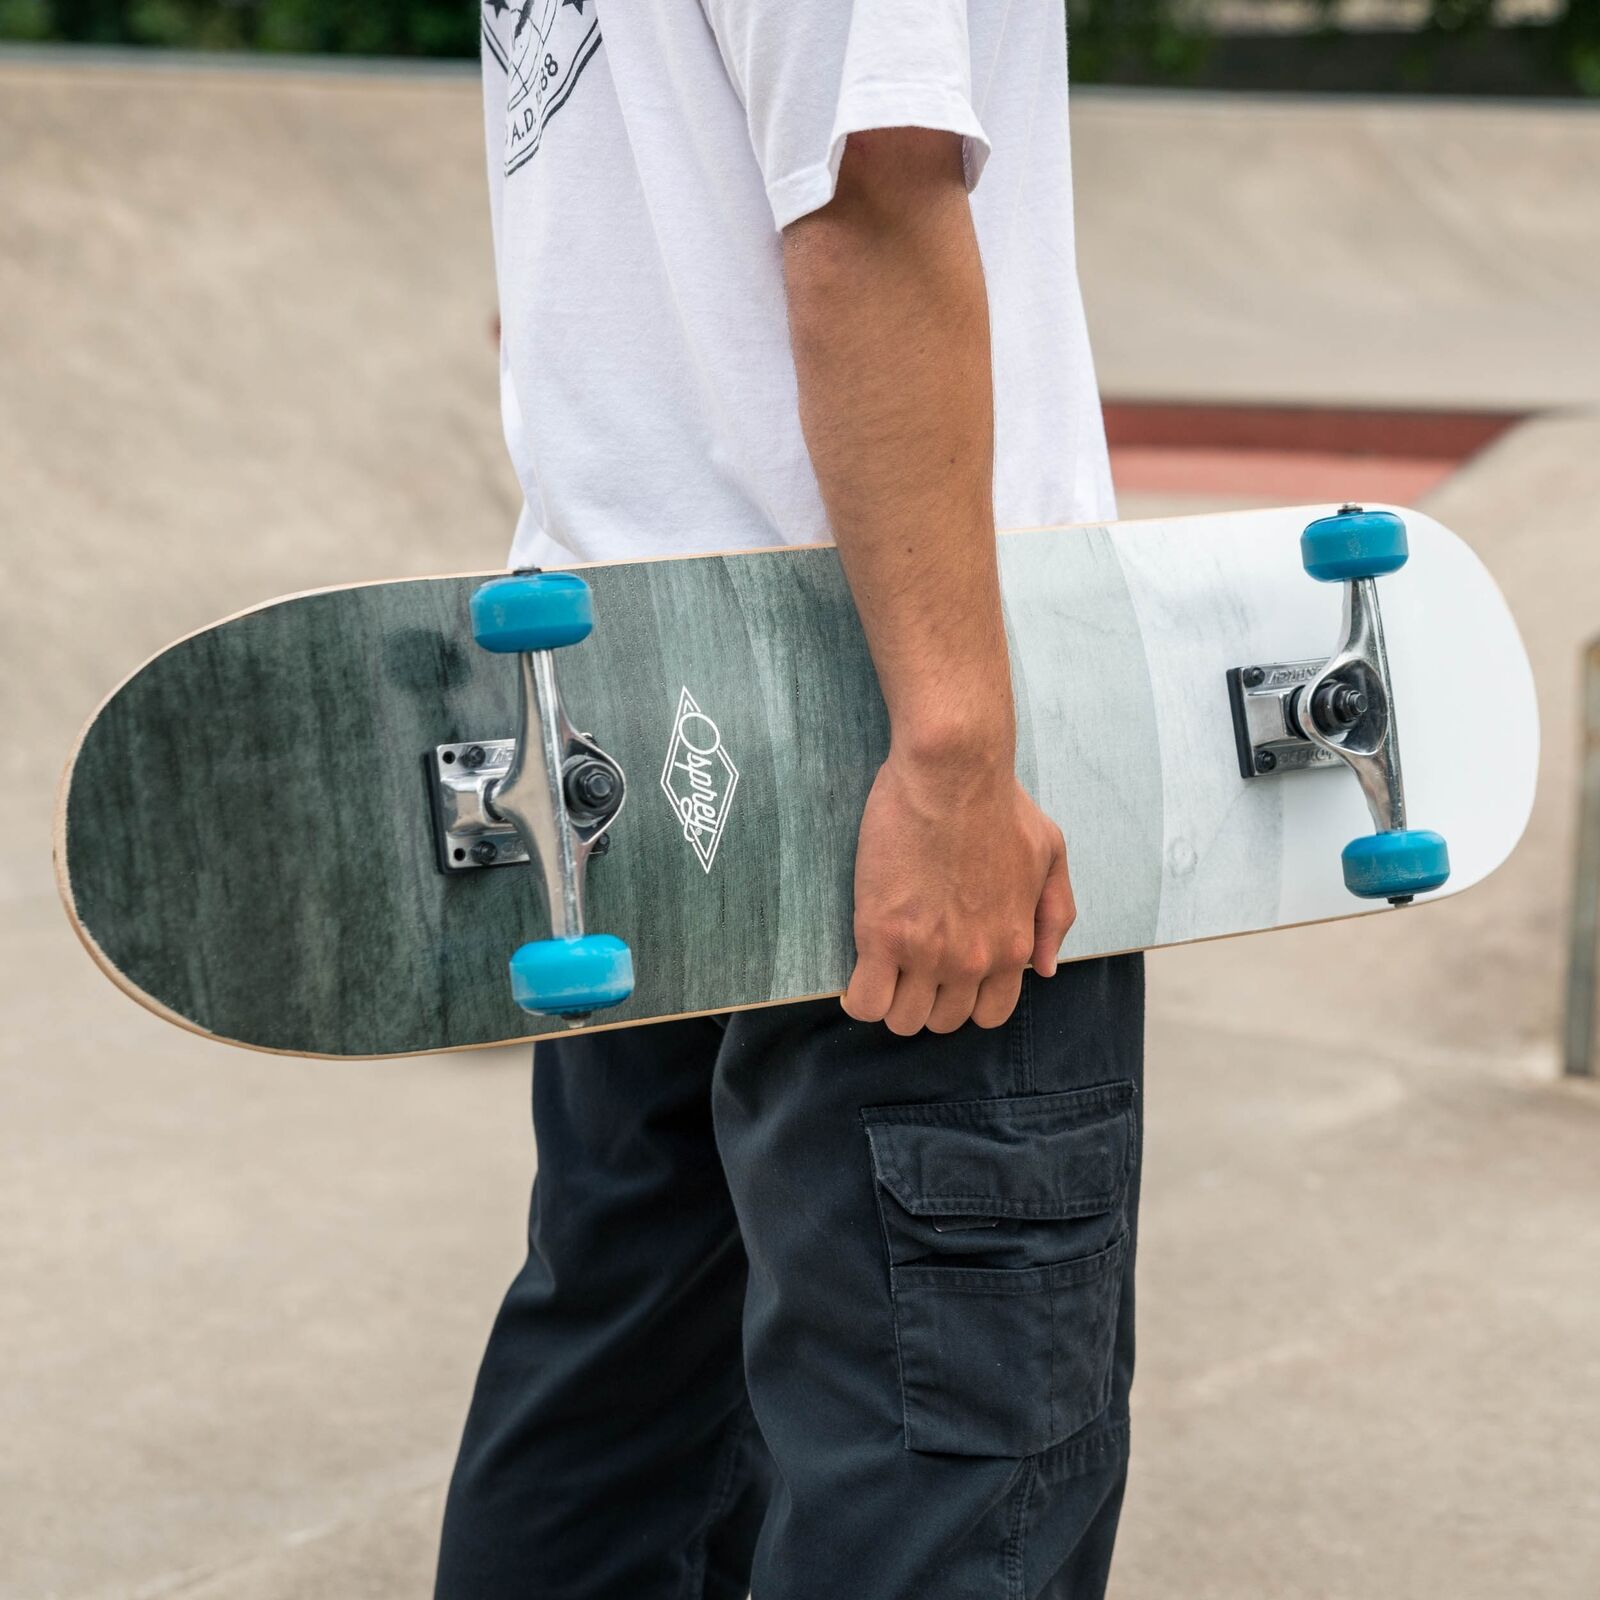 Skateboard for Beginners Uk